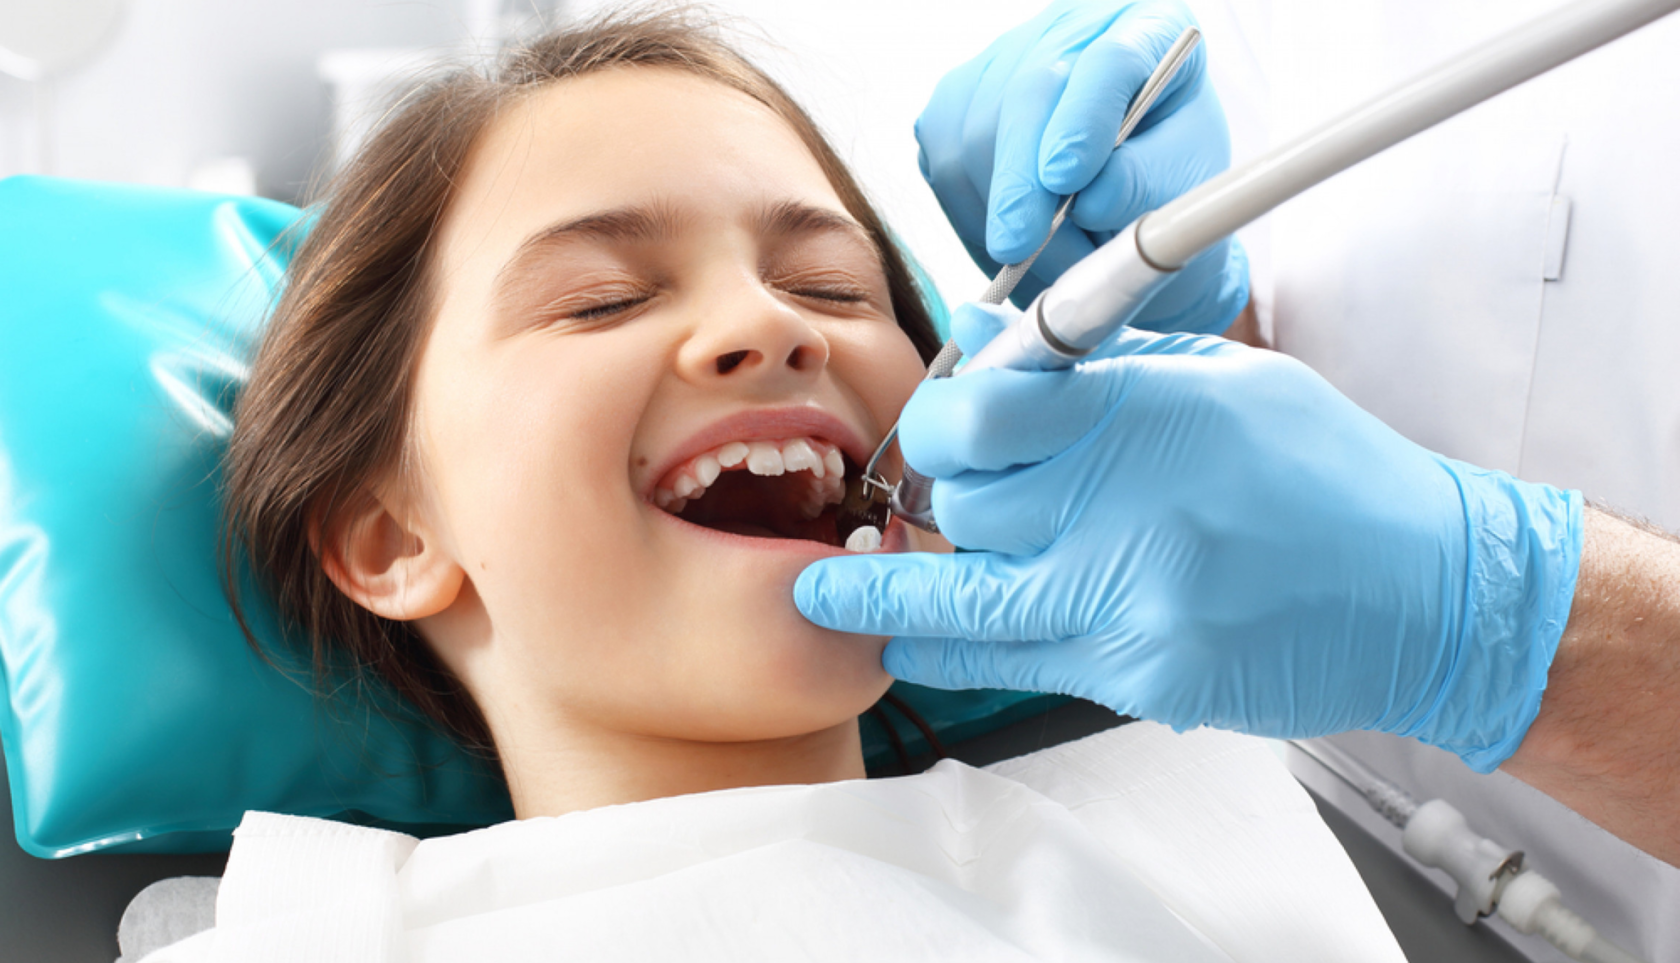 Осмотр полости рта детей. Профессиональная гигиена полости рта. Профессиональная гигиена полости рта у детей. Зубы стоматолог. Гигиена рта у стоматолога.